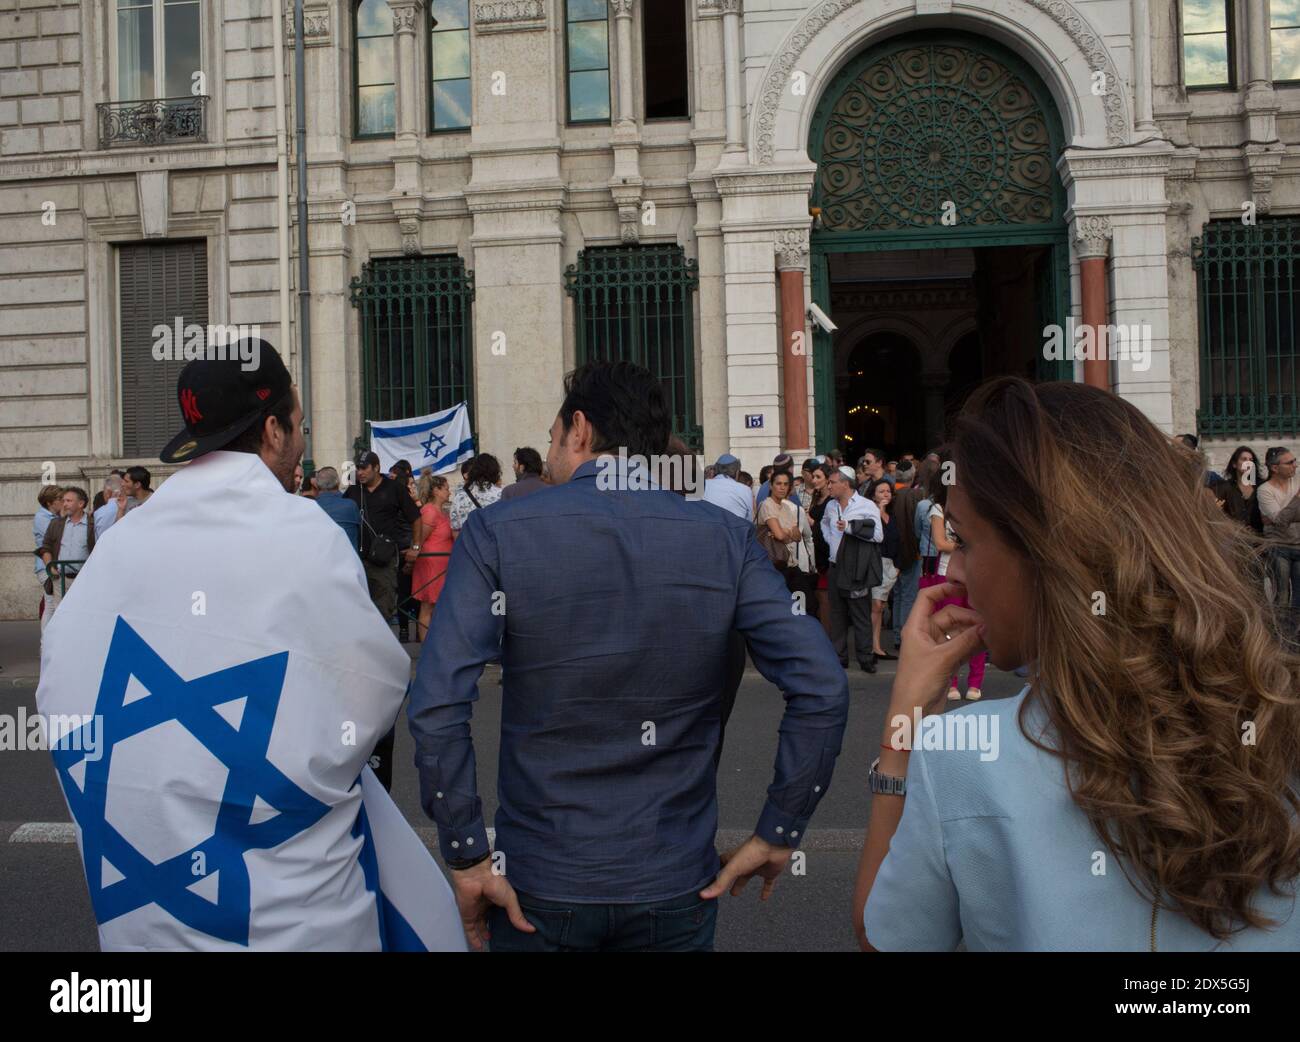 Am 31. Juli 2014 versammeln sich die Menschen in der Synagoge von Lyon zu einer Gebetszeremonie in Lyon im Südosten Frankreichs. Heute nahmen die Menschen an einer Demonstration vor der Synagoge Teil, die vom repräsentativen Rat der jüdischen Institutionen in Frankreich (CRIF) einberufen wurde, da Frankreich erwägt, eine radikale jüdische Gruppe, die Jewish Defence League (LDJ), aufzulösen, deren Mitglieder bei Kundgebungen über die israelische Offensive in Gaza mit pro-palästinensischen Aktivisten zusammenstießen. Die Kundgebung ist eine Reaktion auf wochenlange pro-palästinensische Proteste, die von Zusammenstößen, Verhaftungen und Antisemitismusvorwürfen gekennzeichnet sind, bei denen Synagogen als Zielscheibe genommen wurden Stockfoto